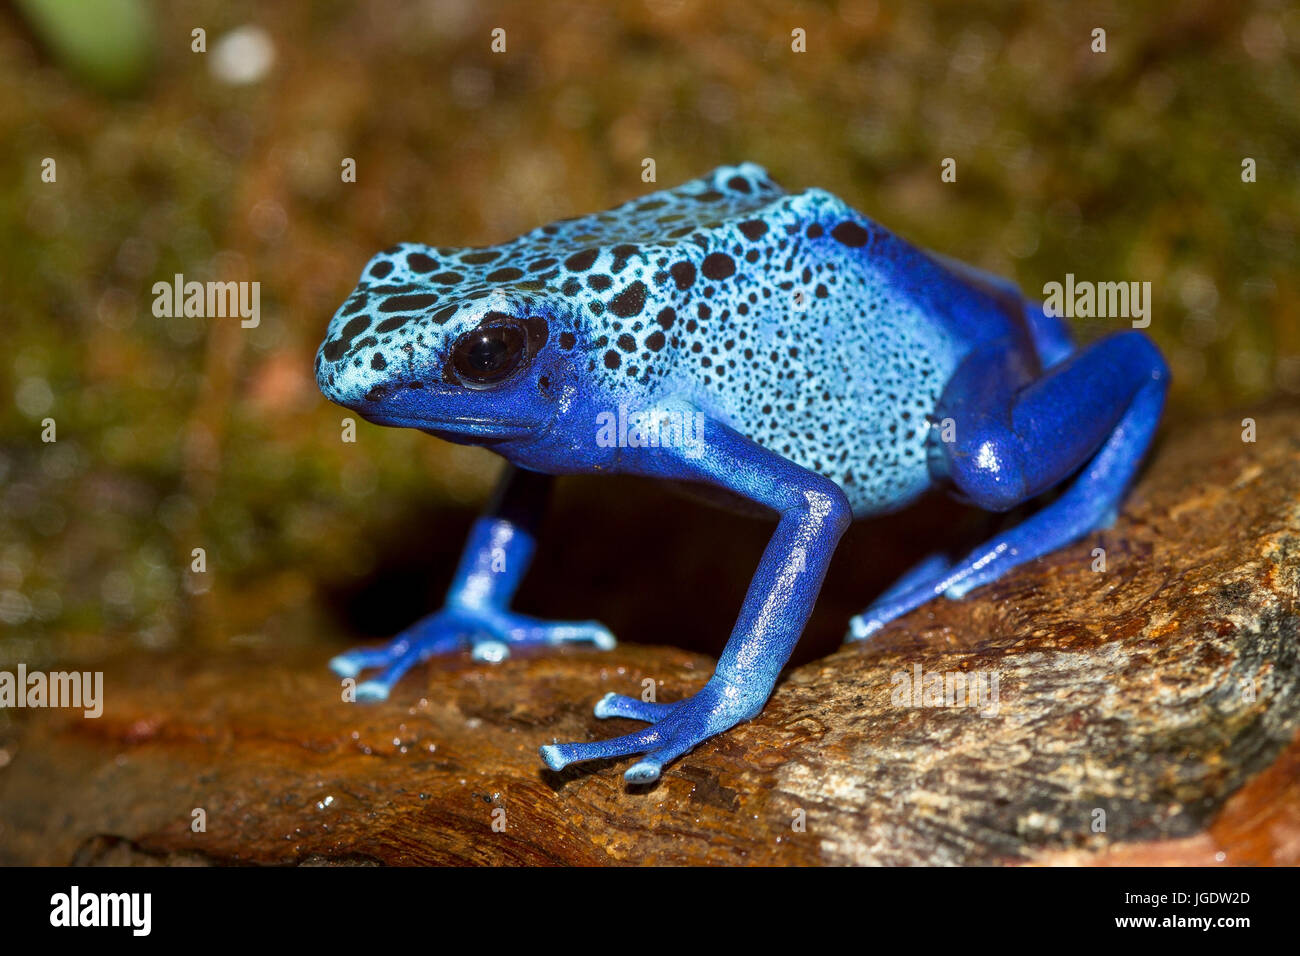 Blue arrow poison frog, Dendrobates azureus, Blauer Pfeilgiftfrosch (Dendrobates azureus) Stock Photo